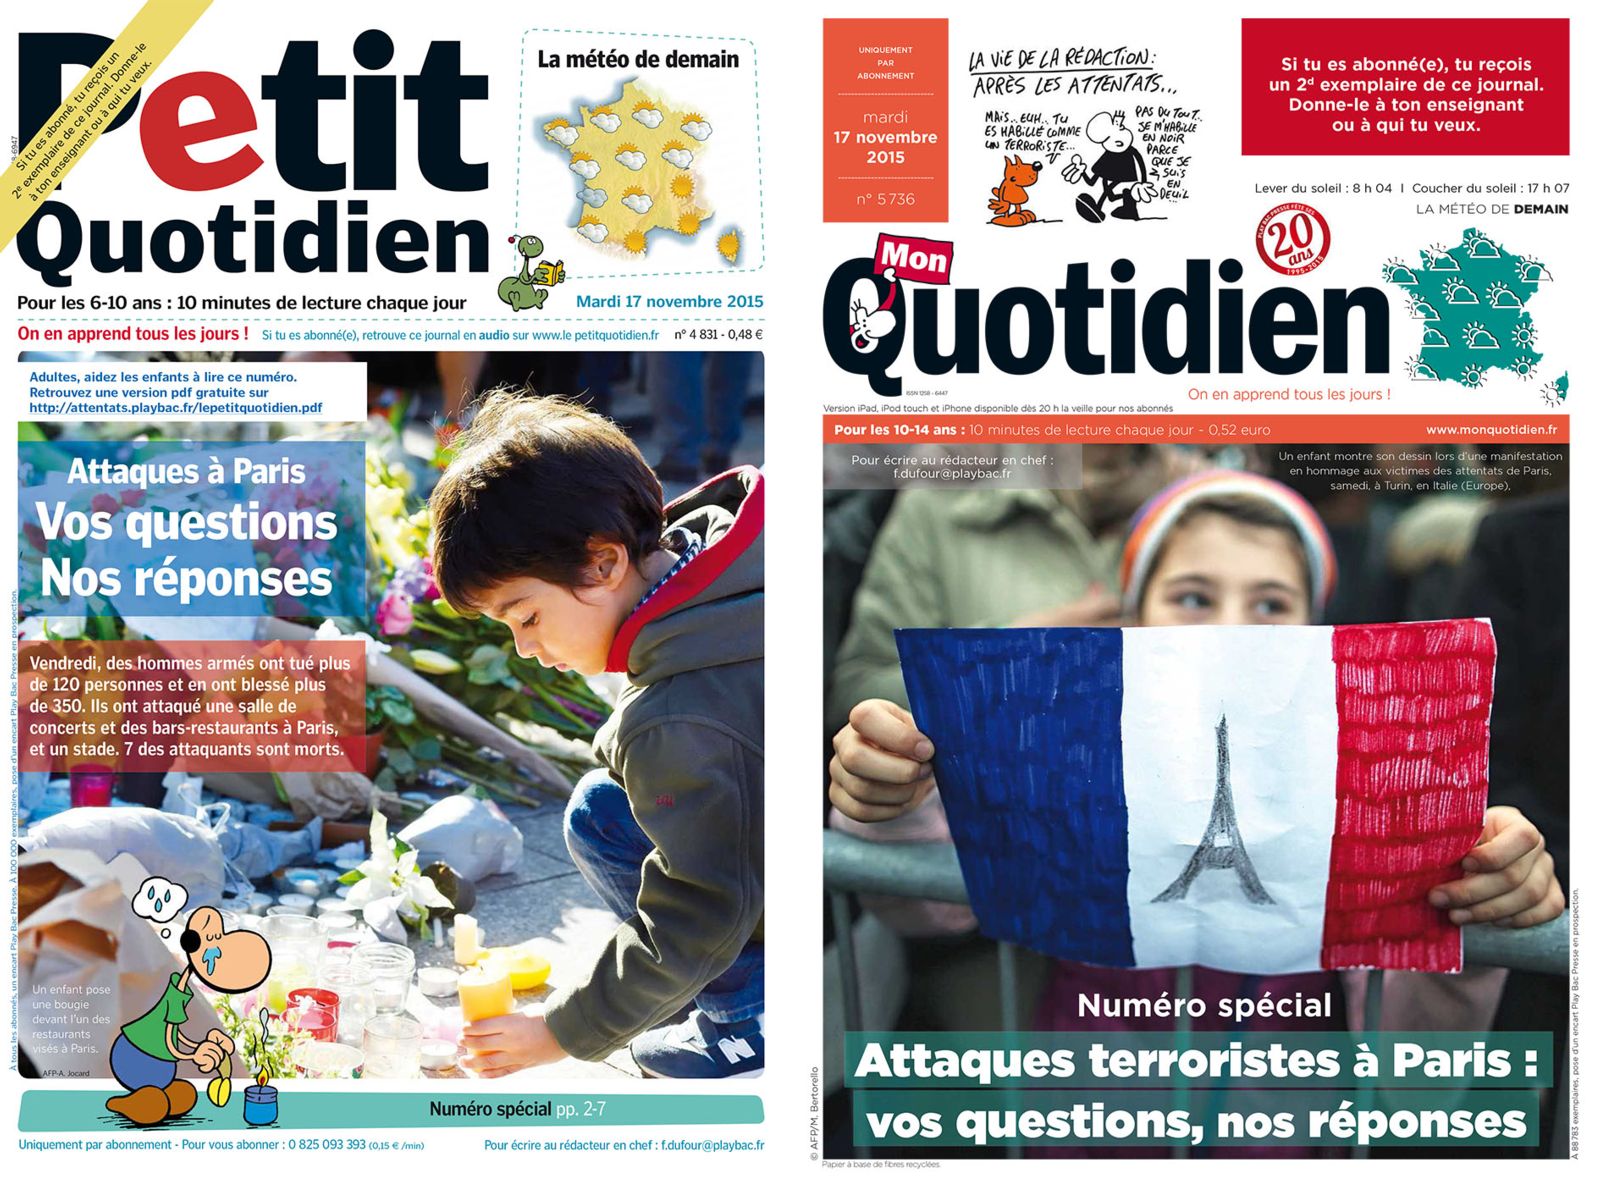 Fake News: Capa da revista Petit Quotidien